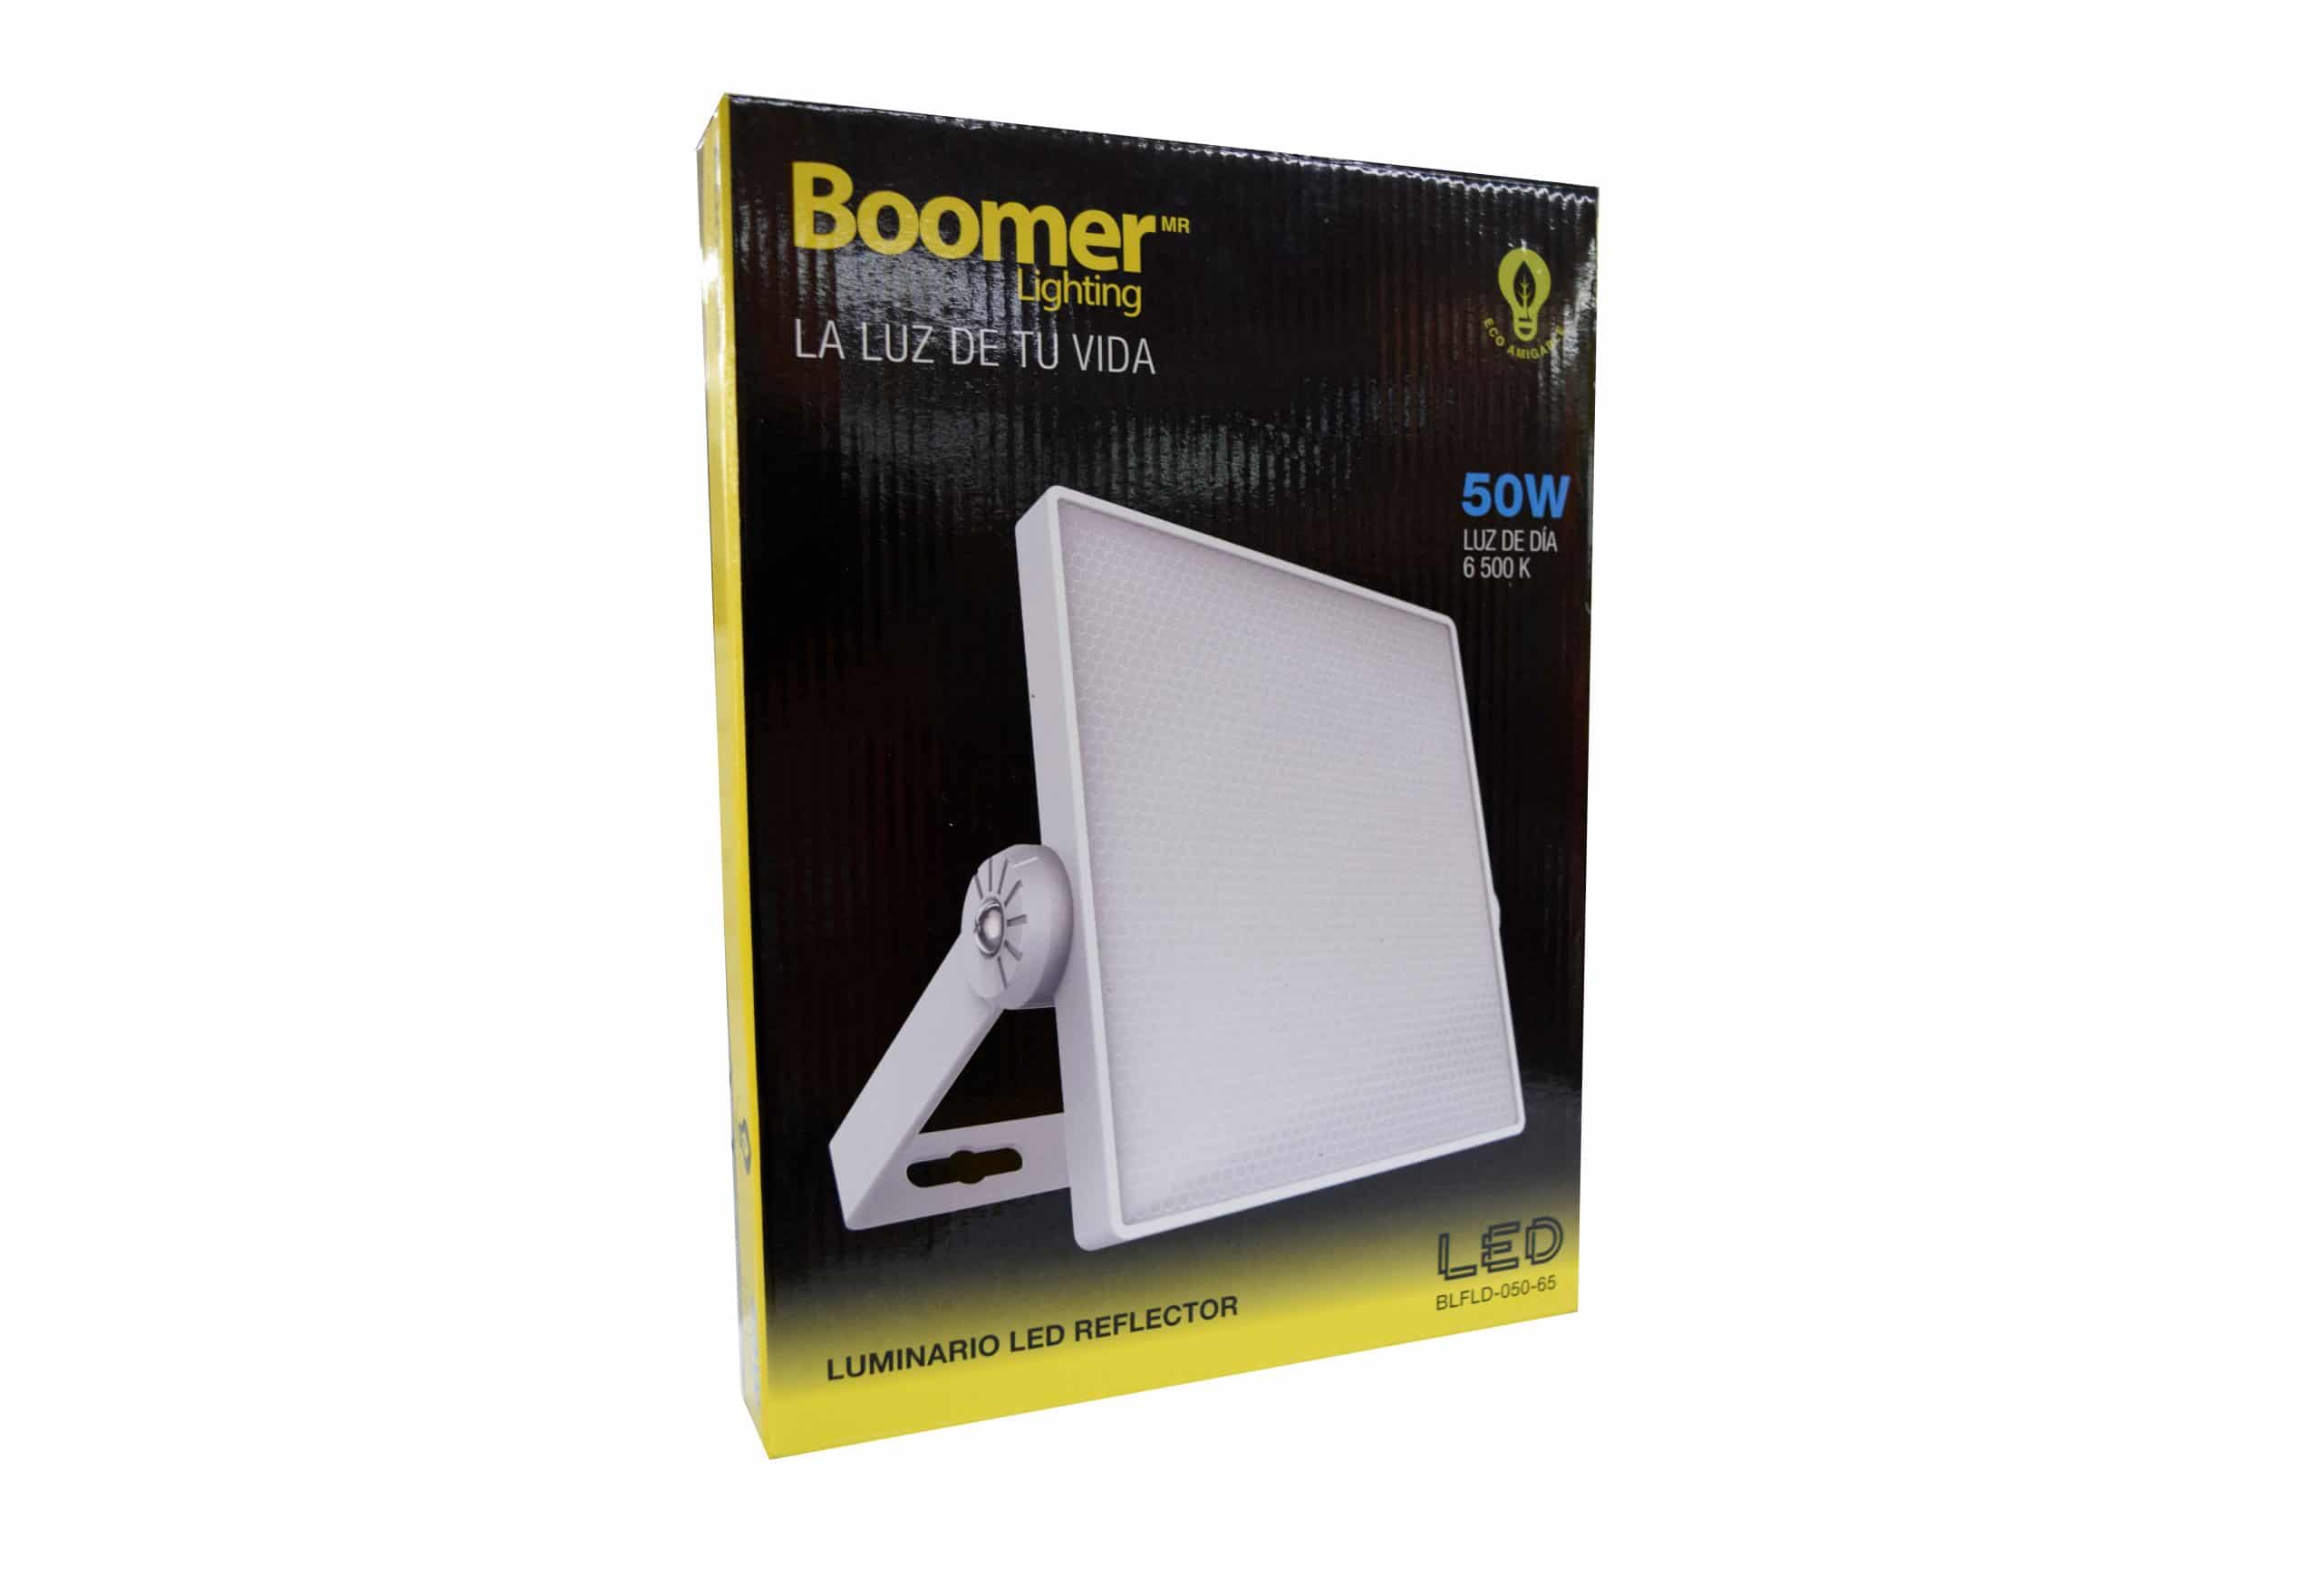 HC111266 - Reflector Luminario Led 50W Boomer BLFLD-050-65 - BOOMER